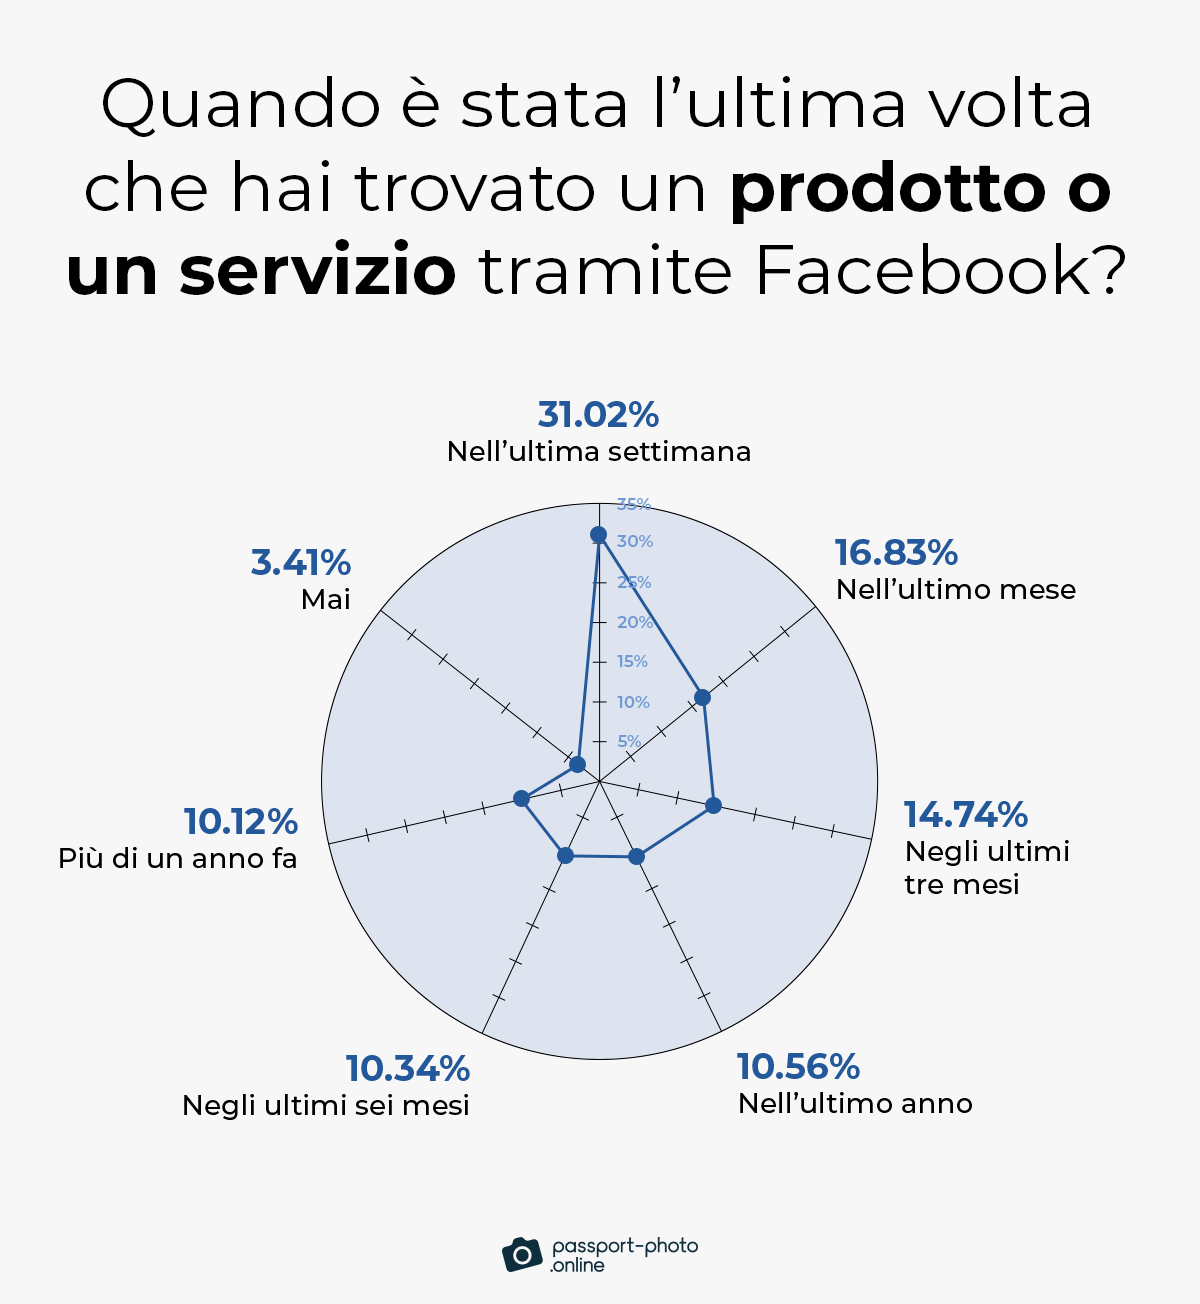 il 63% degli utenti di Facebook ha trovato servizi o prodotti sulla piattaforma negli ultimi tre mesi